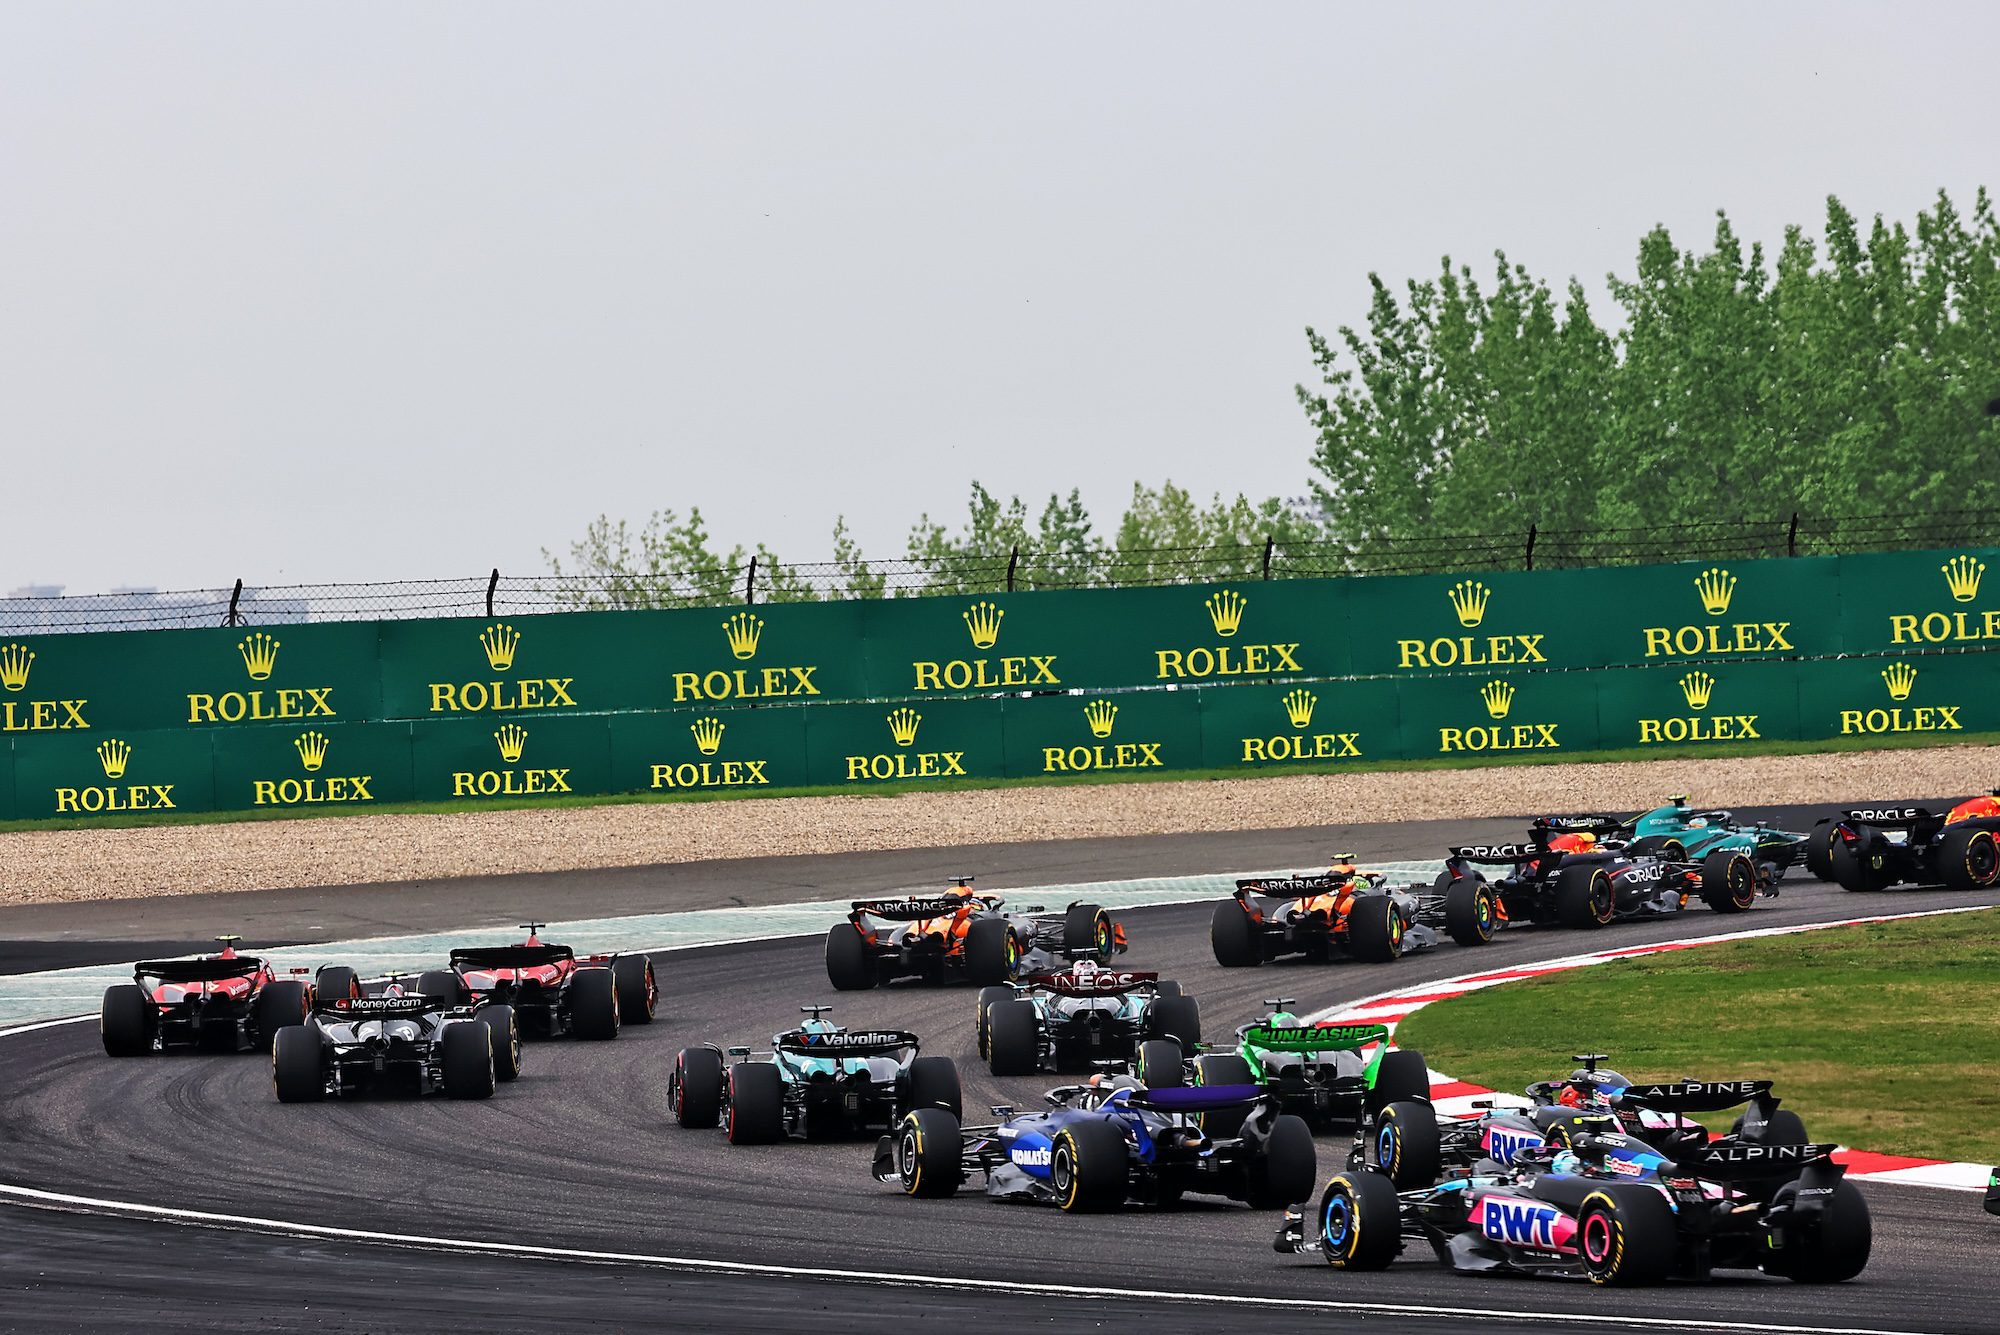 F1: Pilotos convocados pelos comissários após o GP da China